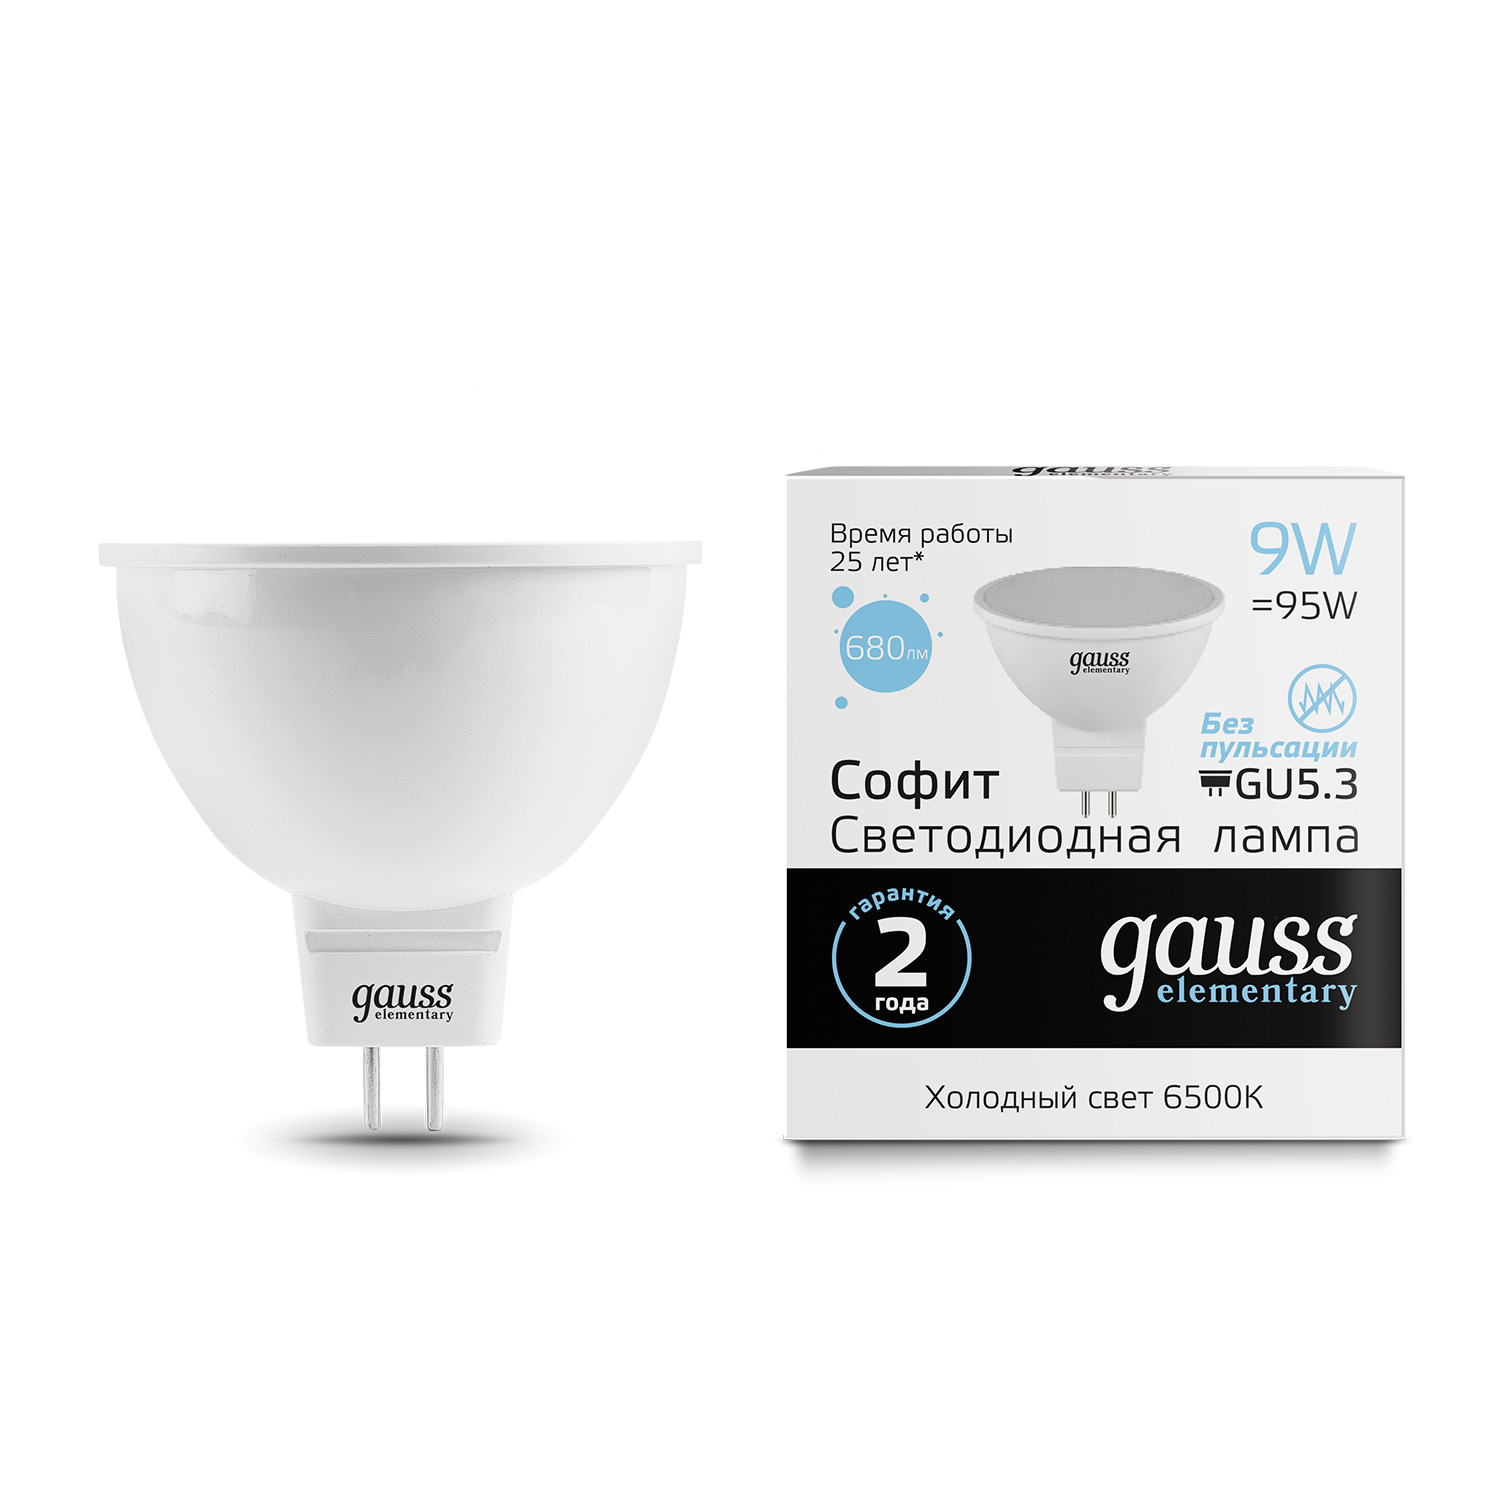 Лампа Gauss LED Elementary MR16 GU5.3 9W 6500K лампочка gauss 13527 elementary mr16